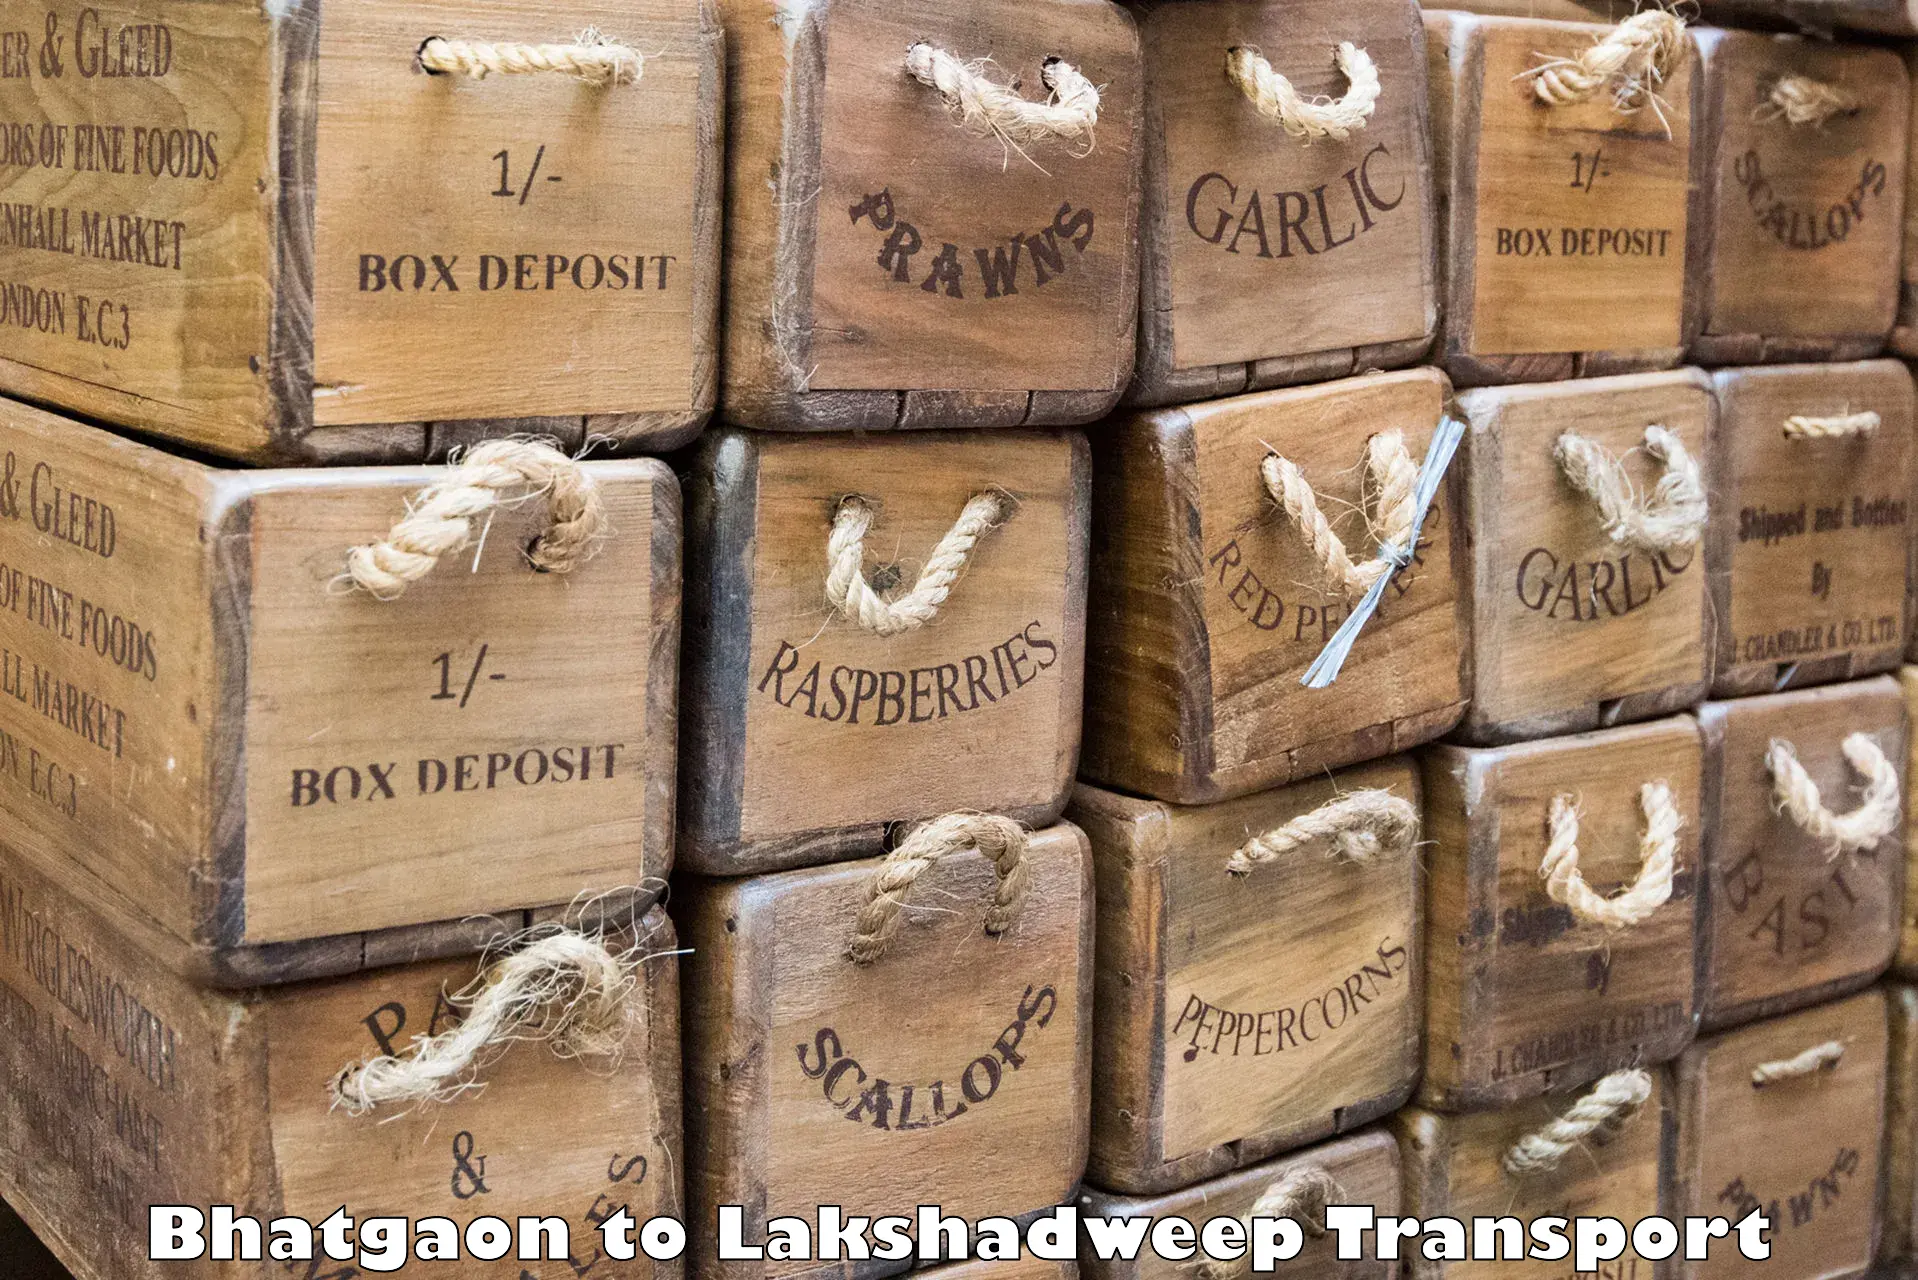 Express transport services Bhatgaon to Lakshadweep